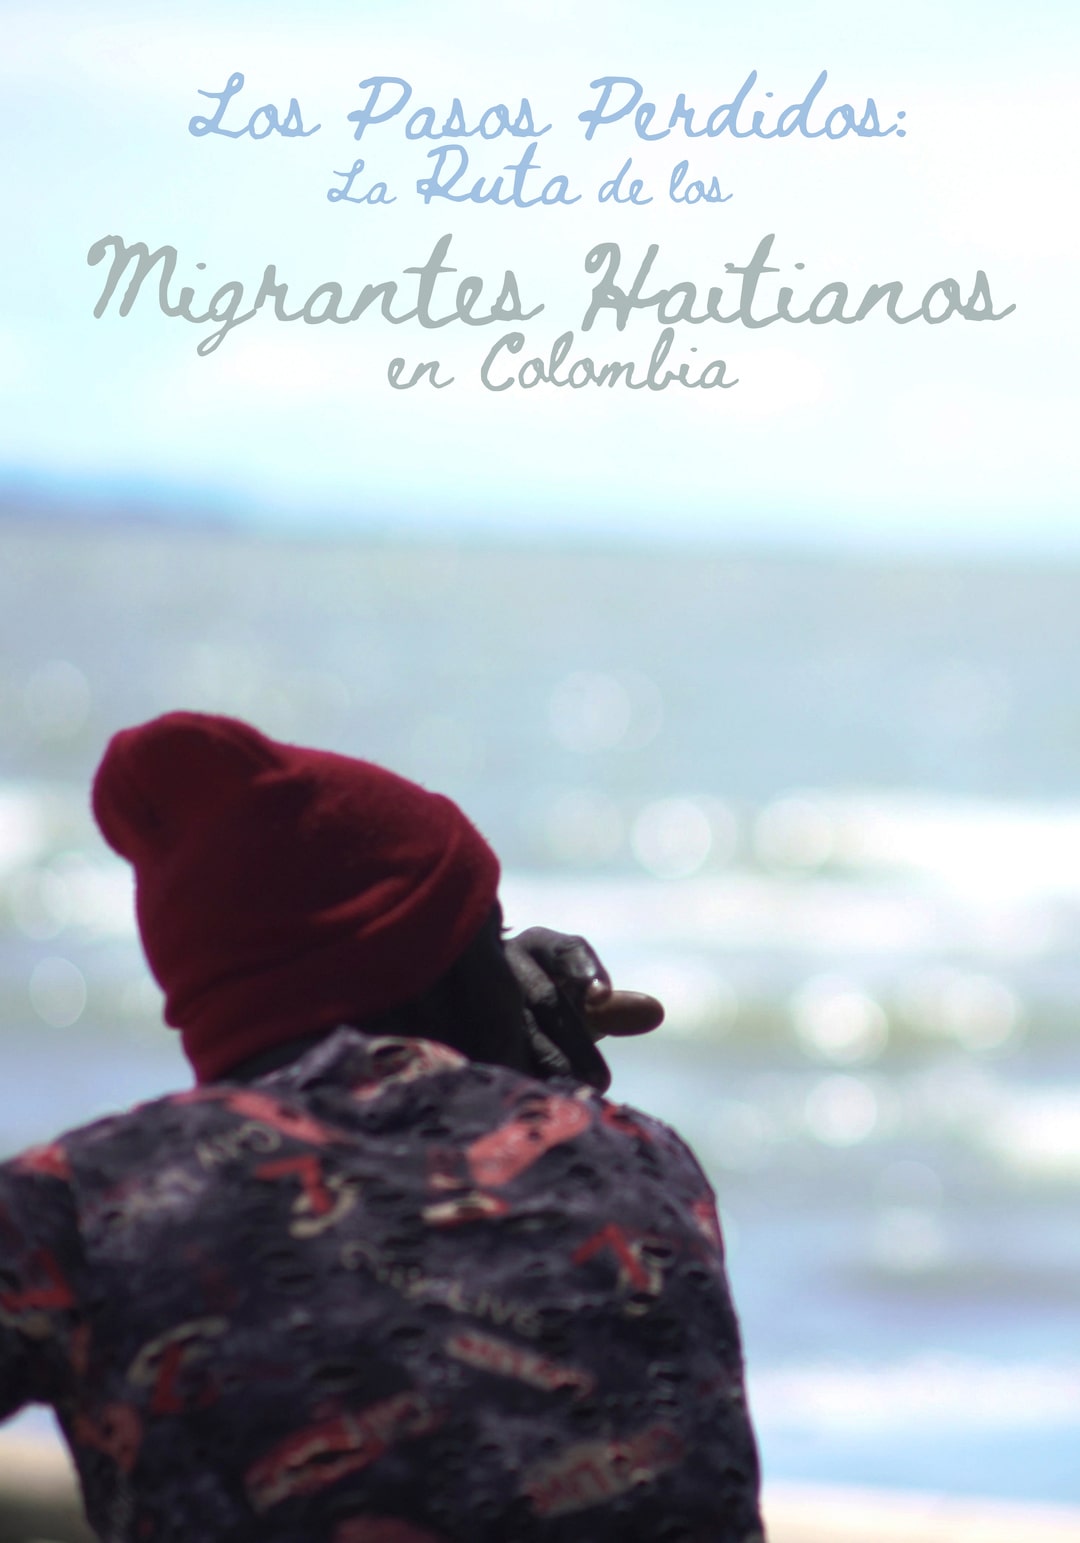 Los pasos perdidos: la ruta de los migrantes haitianos en Colombia